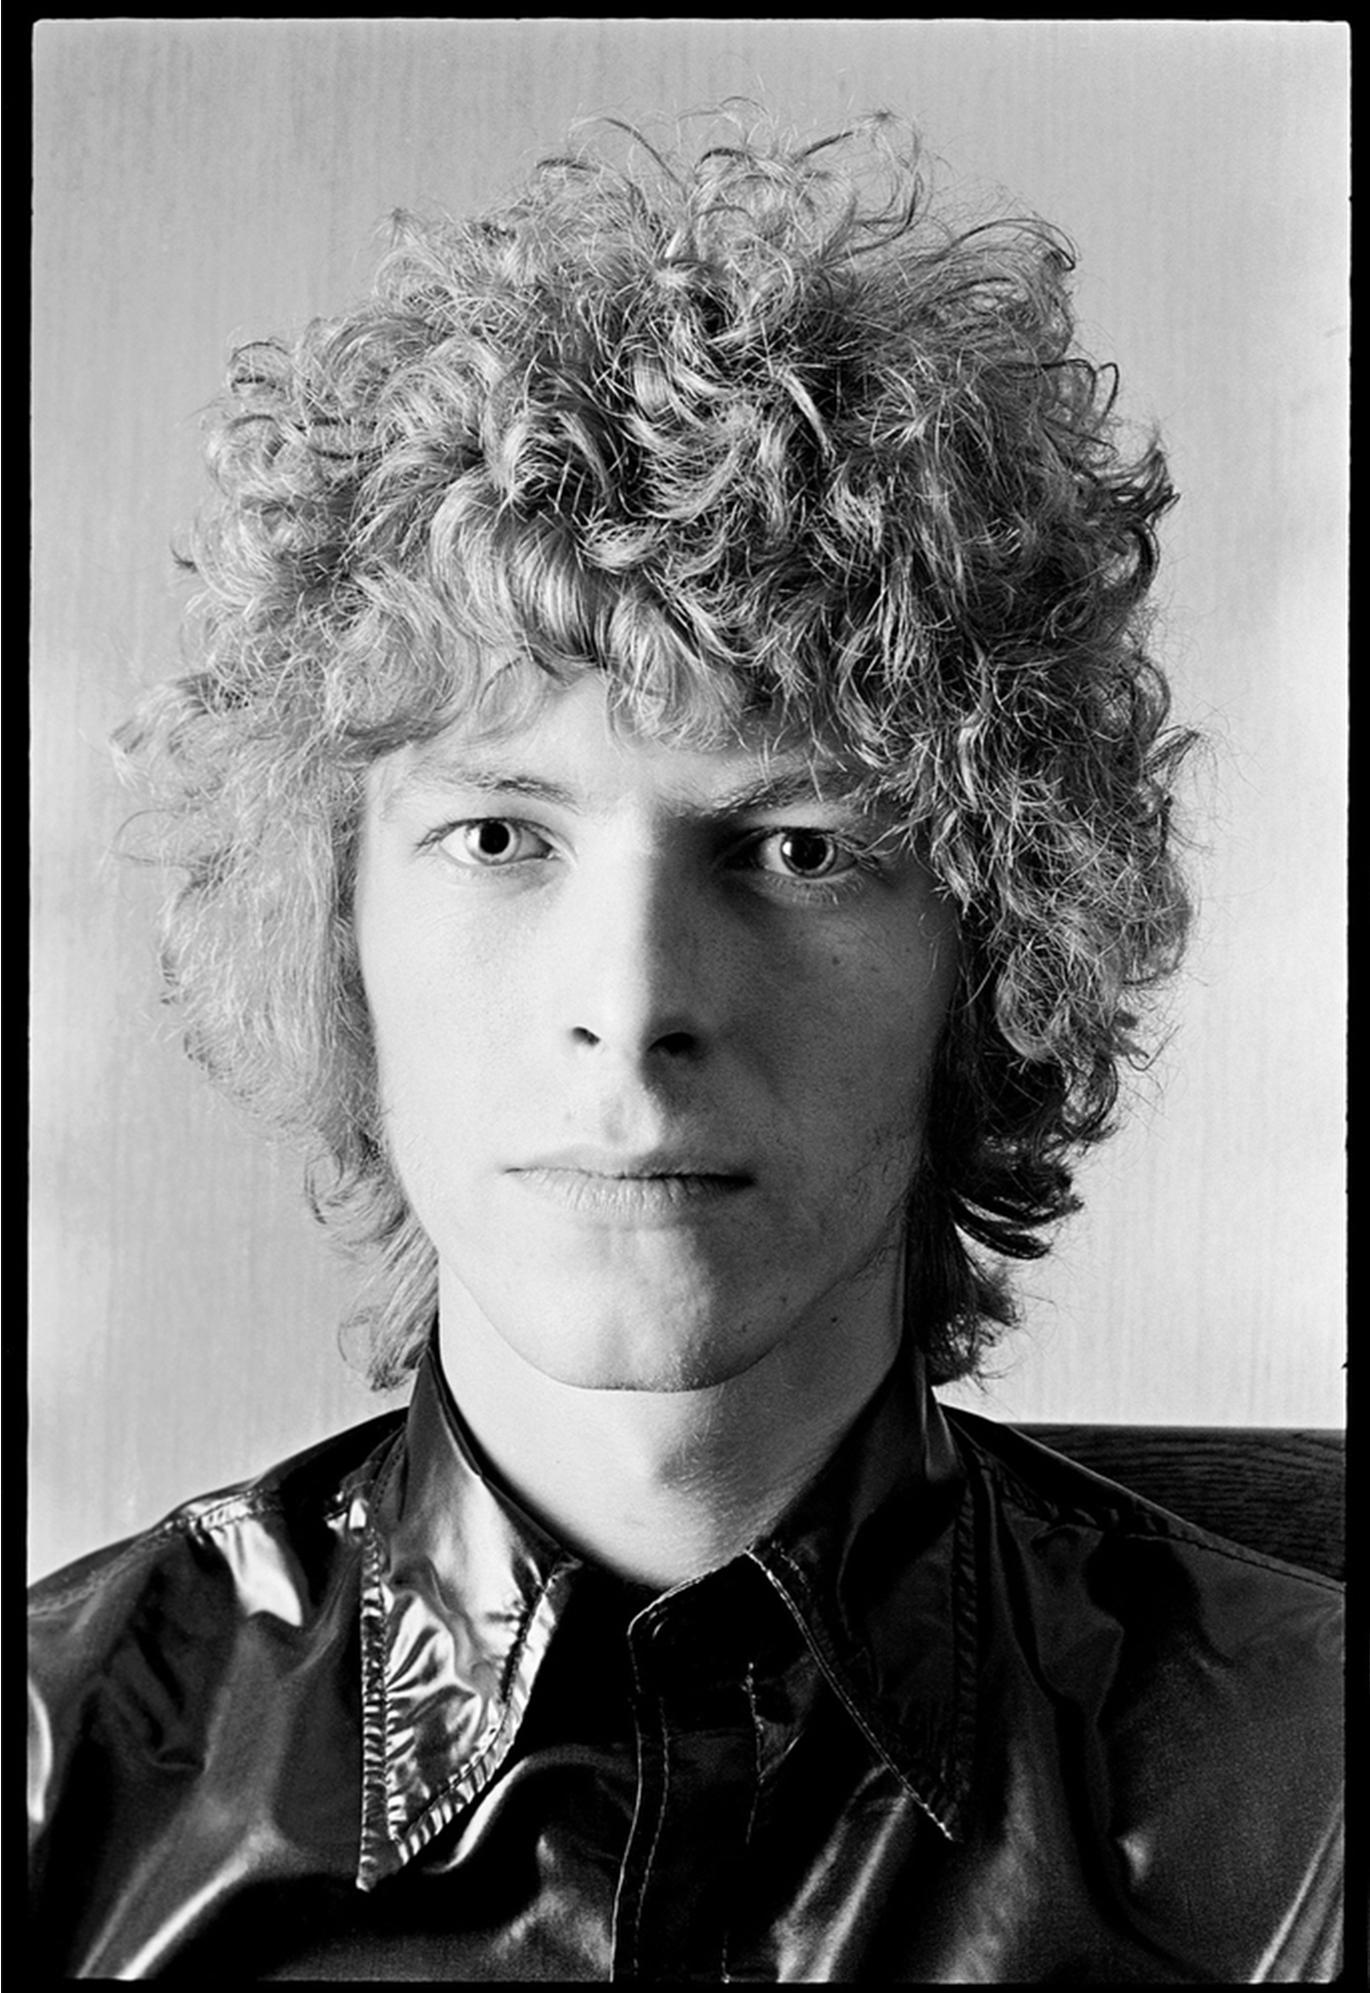 David Bowie 1969 portrait